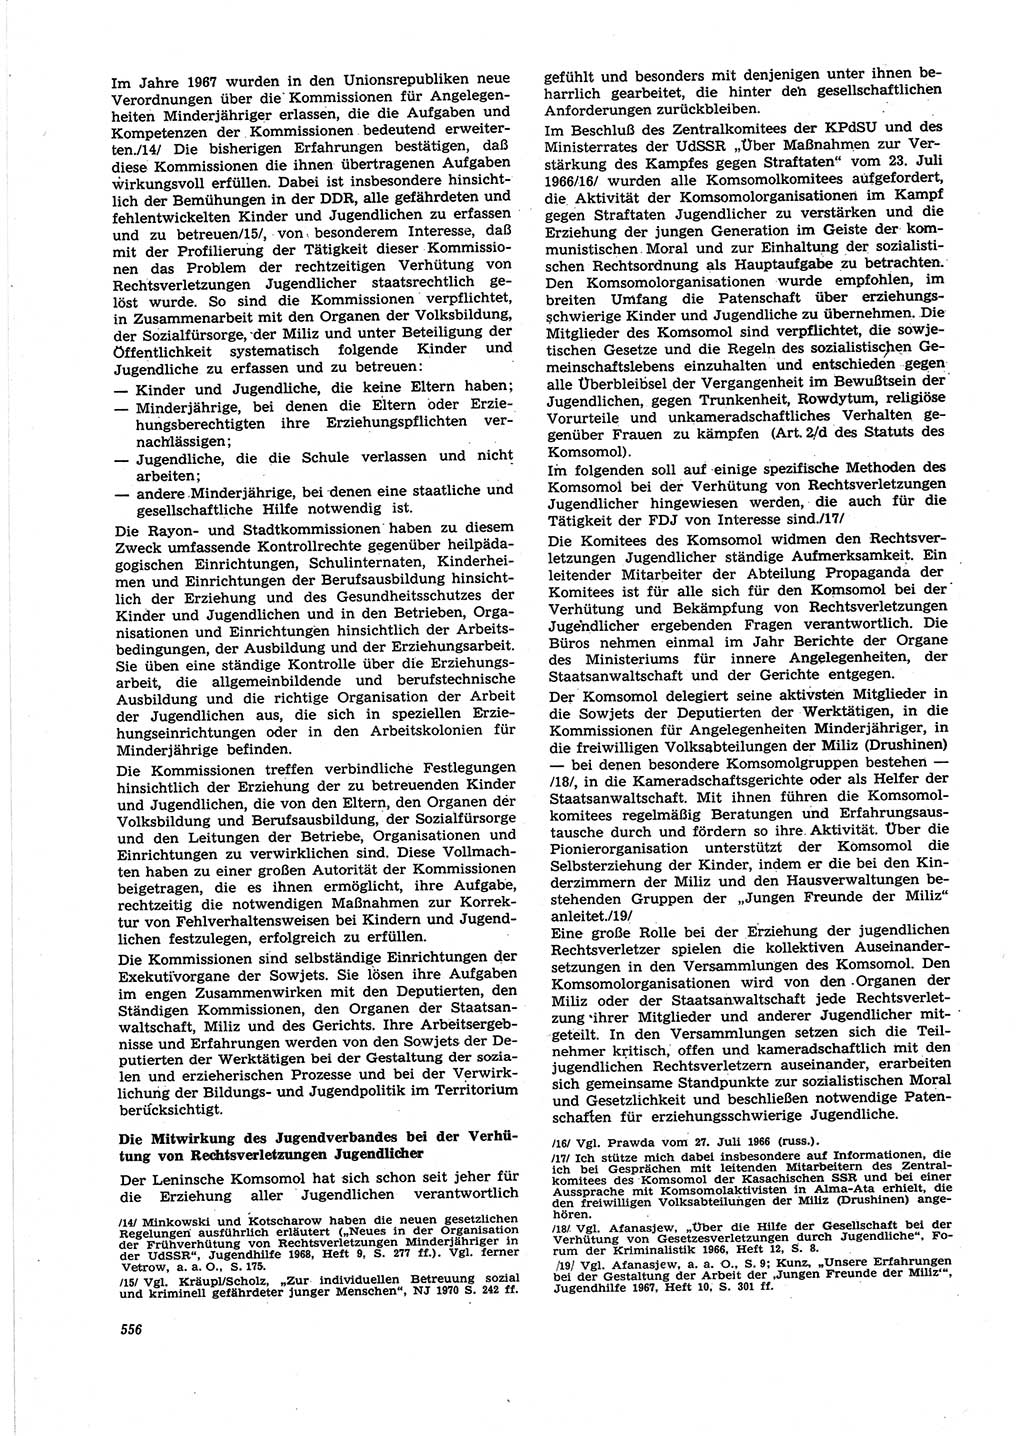 Neue Justiz (NJ), Zeitschrift für Recht und Rechtswissenschaft [Deutsche Demokratische Republik (DDR)], 25. Jahrgang 1971, Seite 556 (NJ DDR 1971, S. 556)